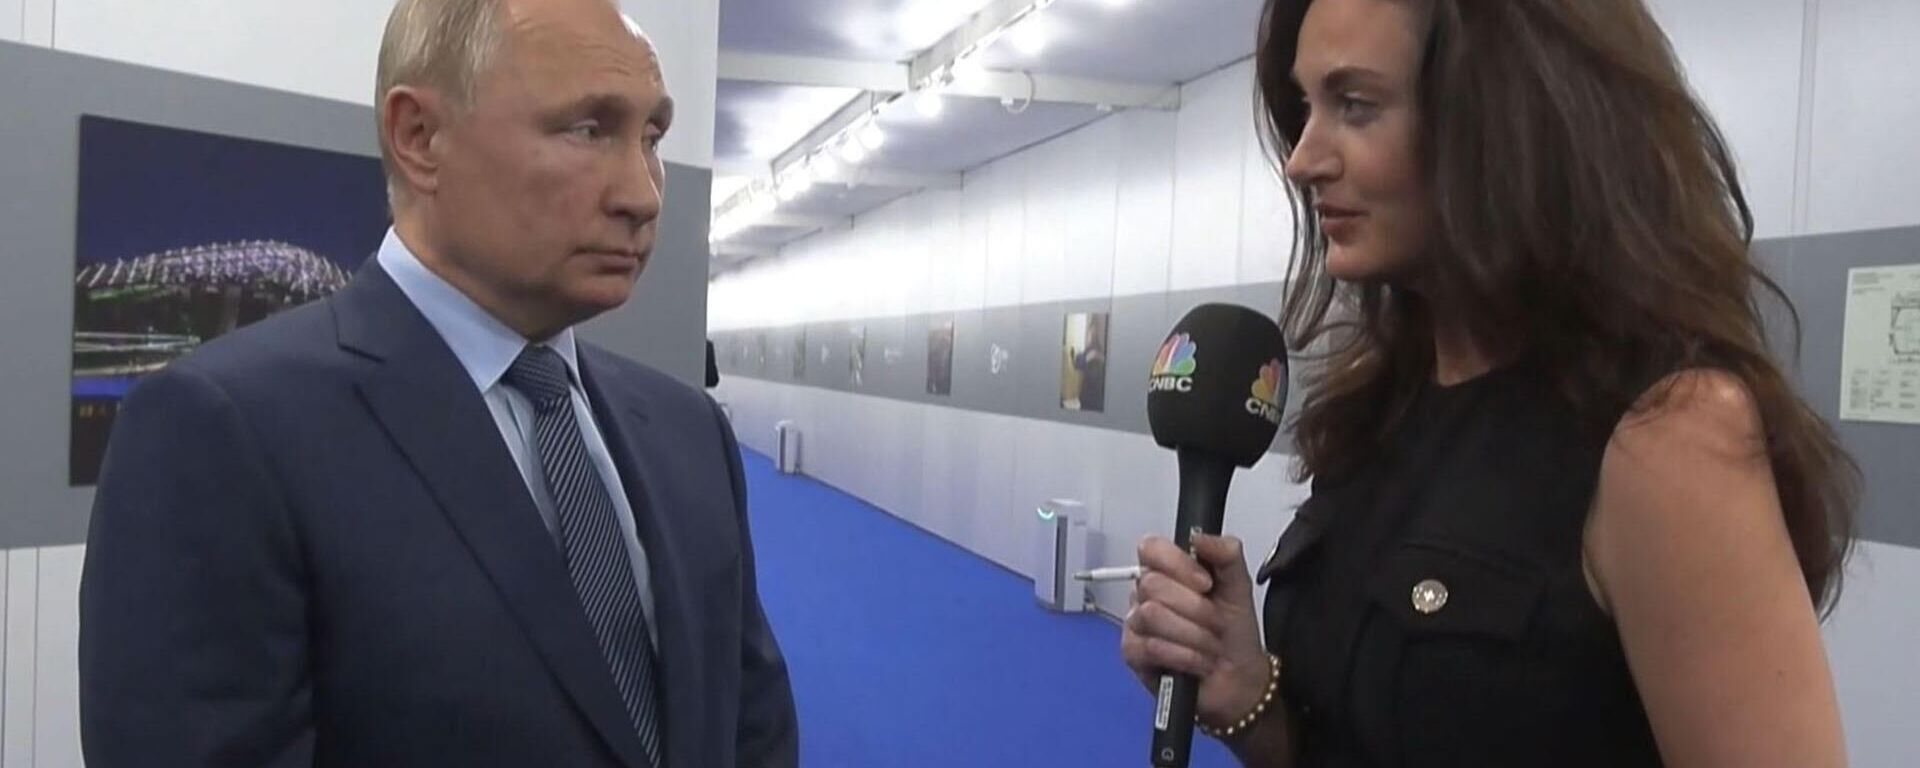 Владимир Путин ответил на вопросы CNBC: о чем спросили лидера РФ  - Sputnik Узбекистан, 1920, 14.10.2021